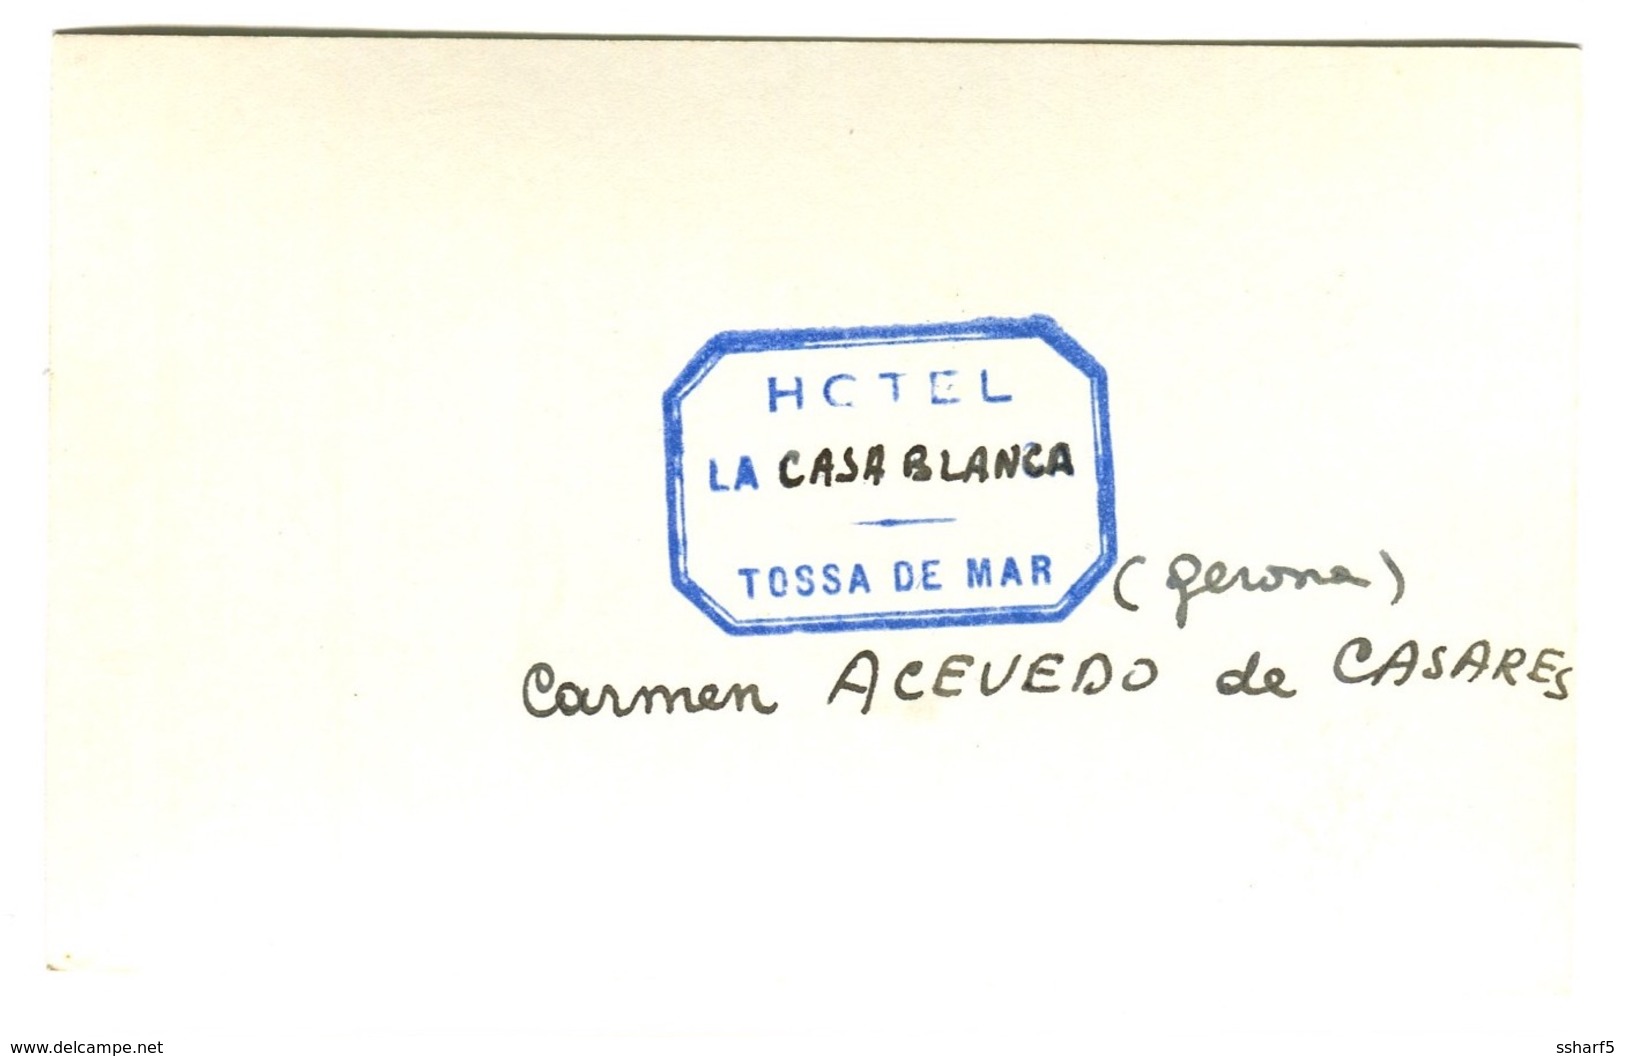 TOSSA DE MAR Hotel La Casa Blanca Gerona Foto C. 1955 - Gerona